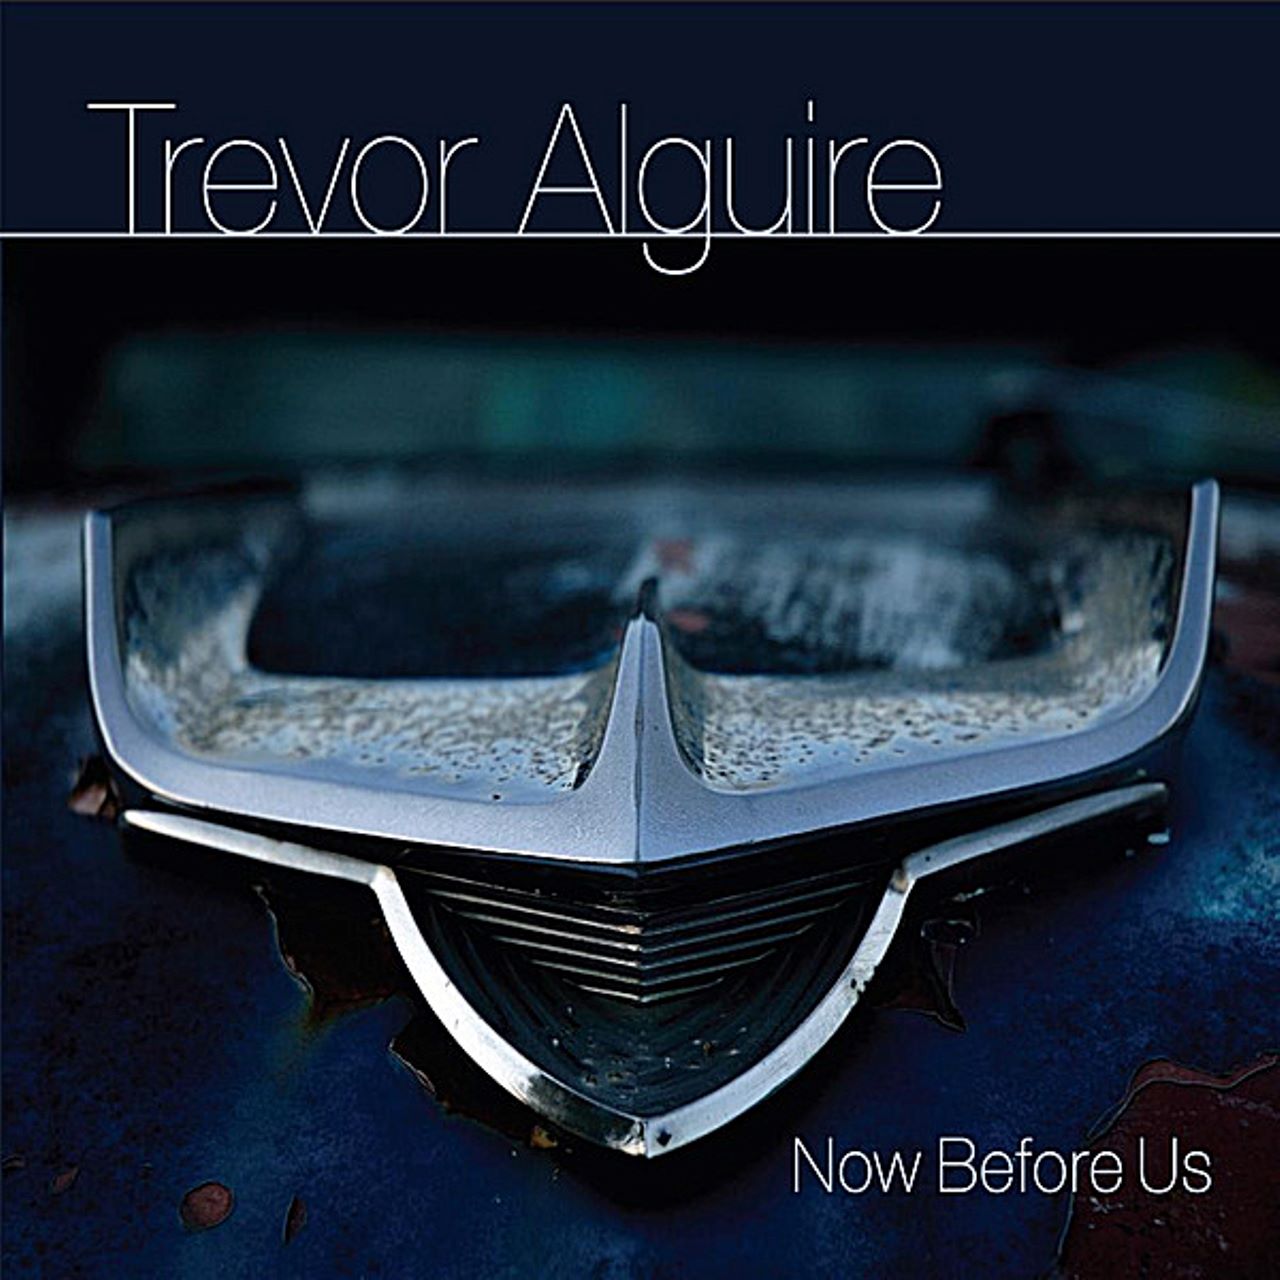 Trevor Alguire - Now Before Us cover album